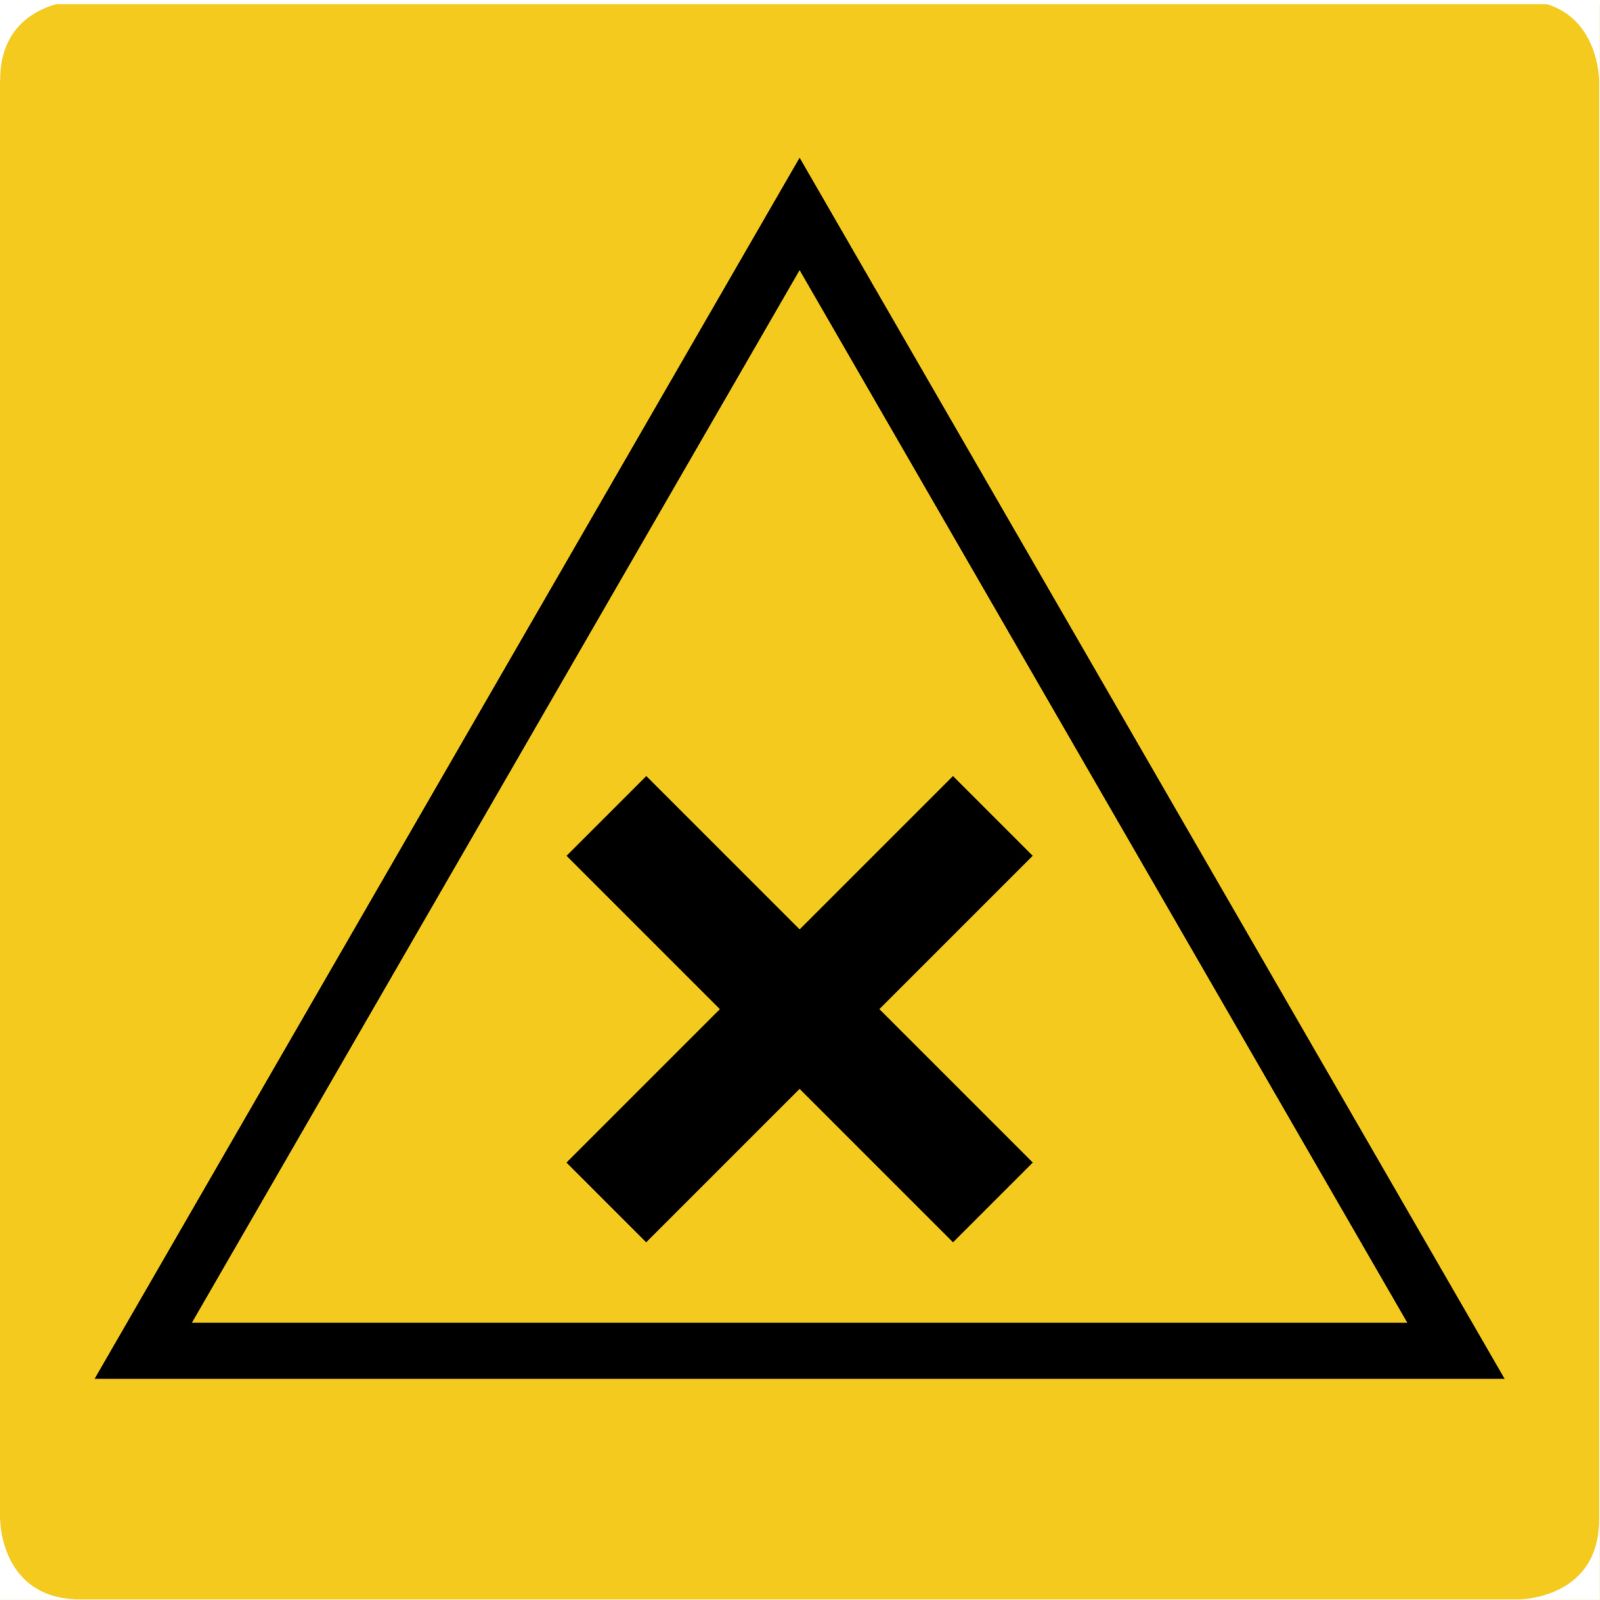 Zusatzschild Kreuzung gelb mit schwarzem Kreuz. Größe 20 mal 20 Zentimeter.